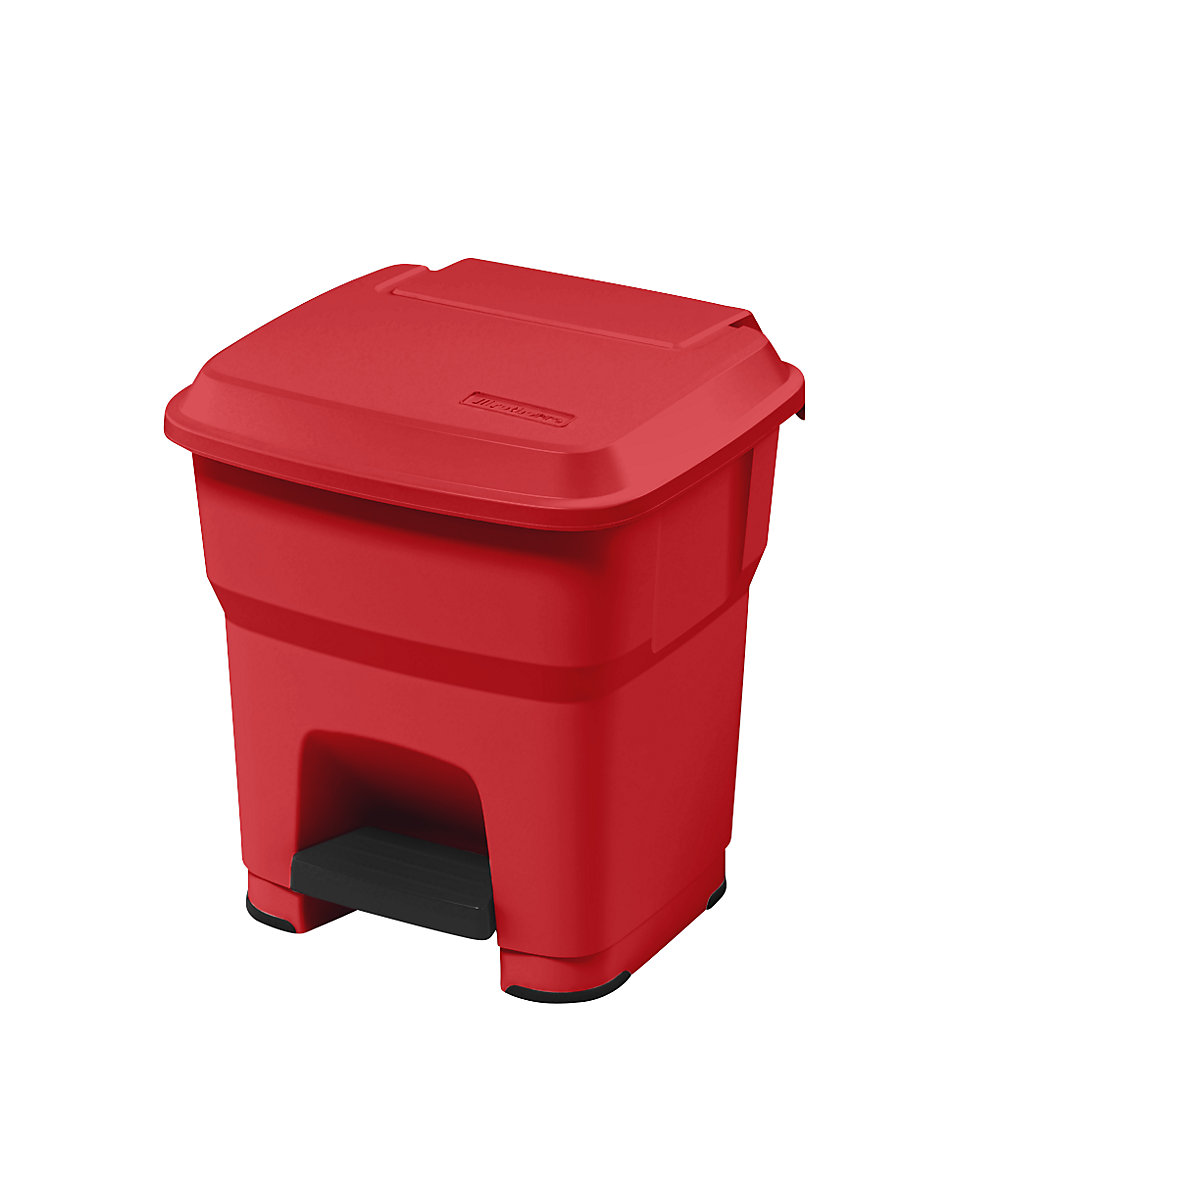 Collecteur de déchets à pédale HERA – rothopro, capacité 35 l, l x h x p 390 x 440 x 390 mm, rouge